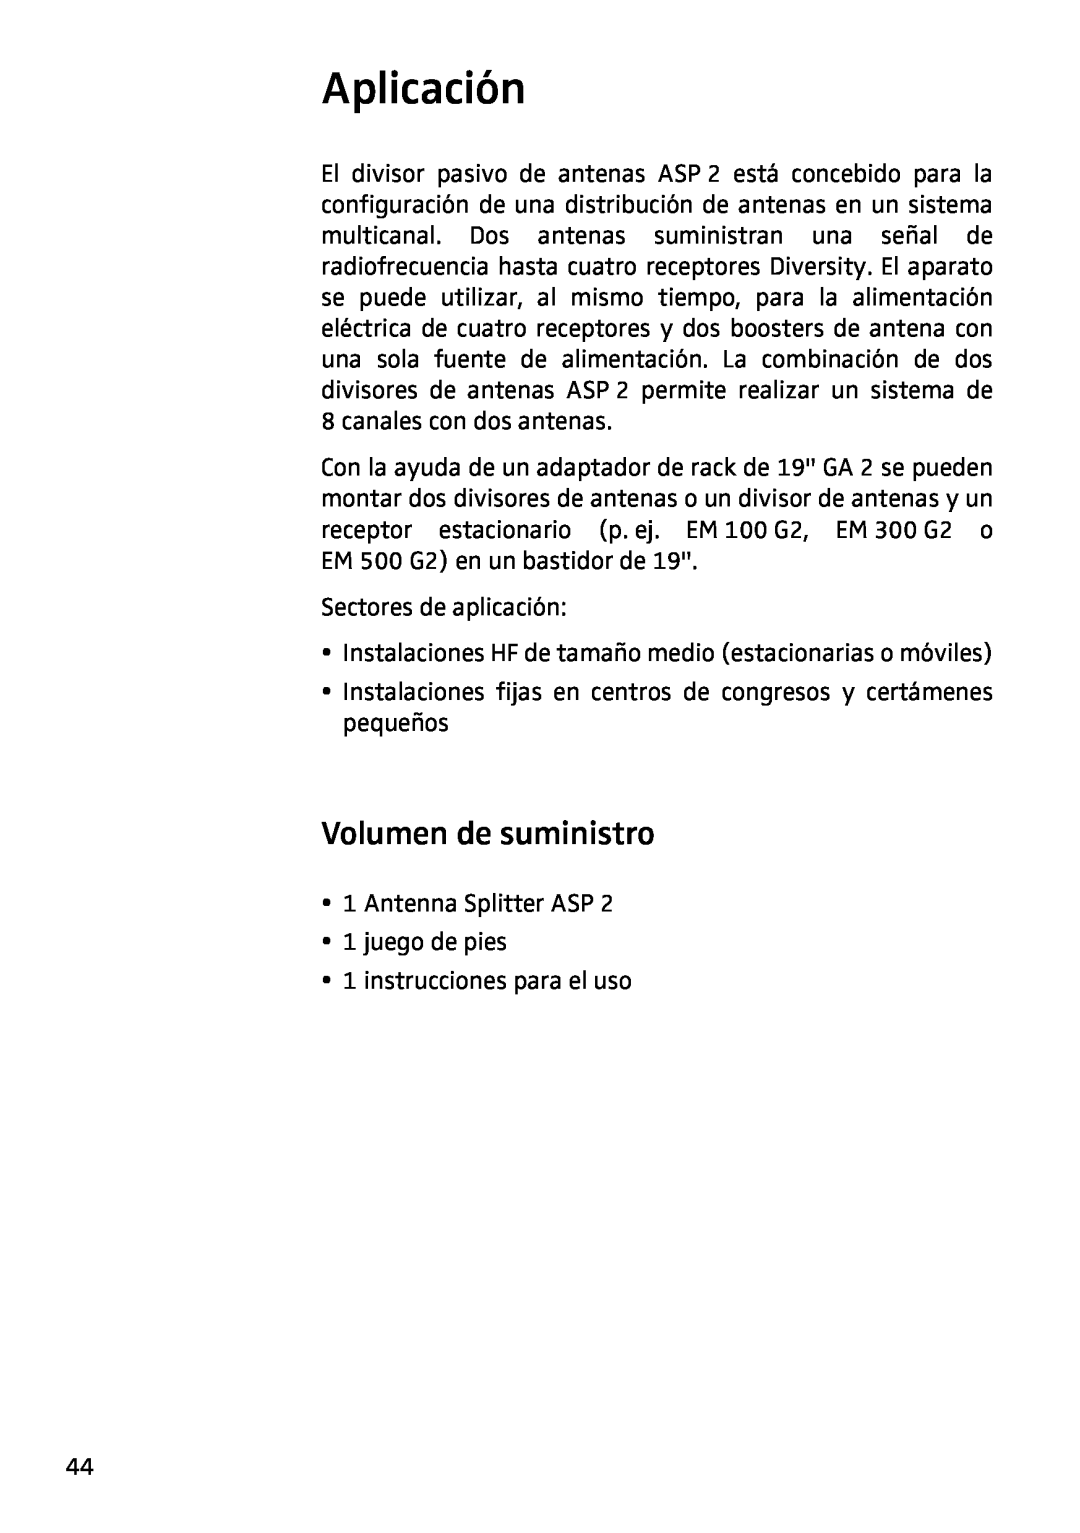 Sennheiser ASP 2 manual Aplicación, Volumen de suministro 